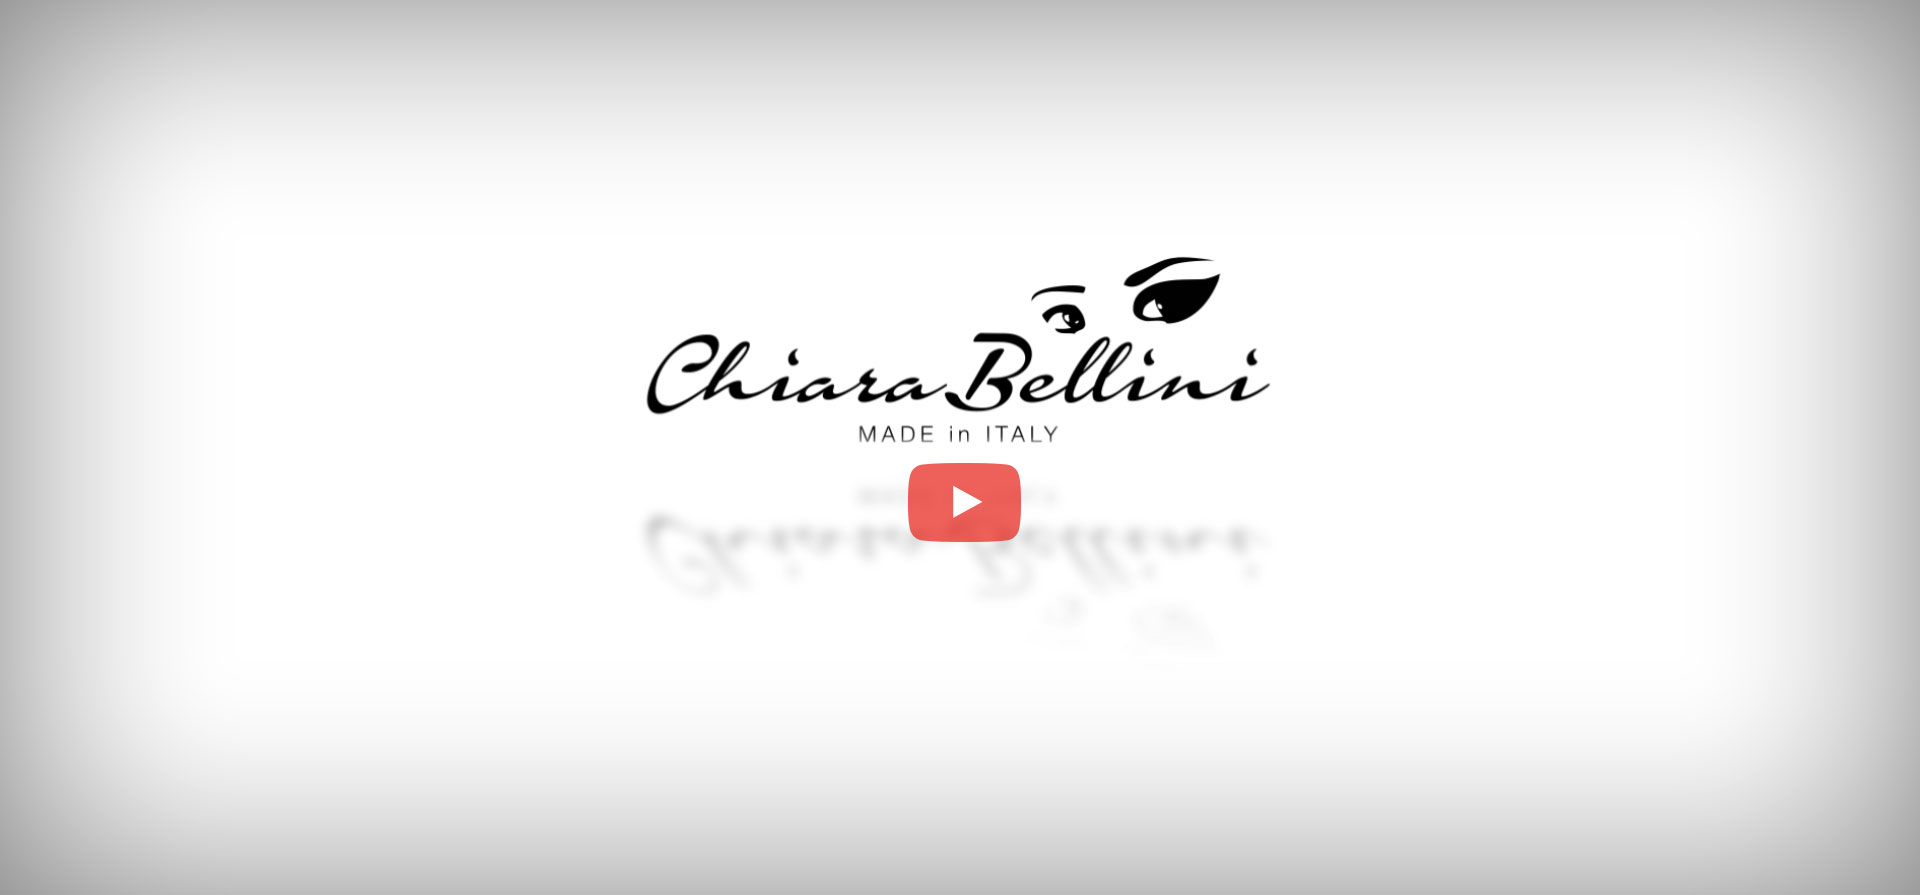 E‘ online il nuovo video aziendale di Chiara Bellini